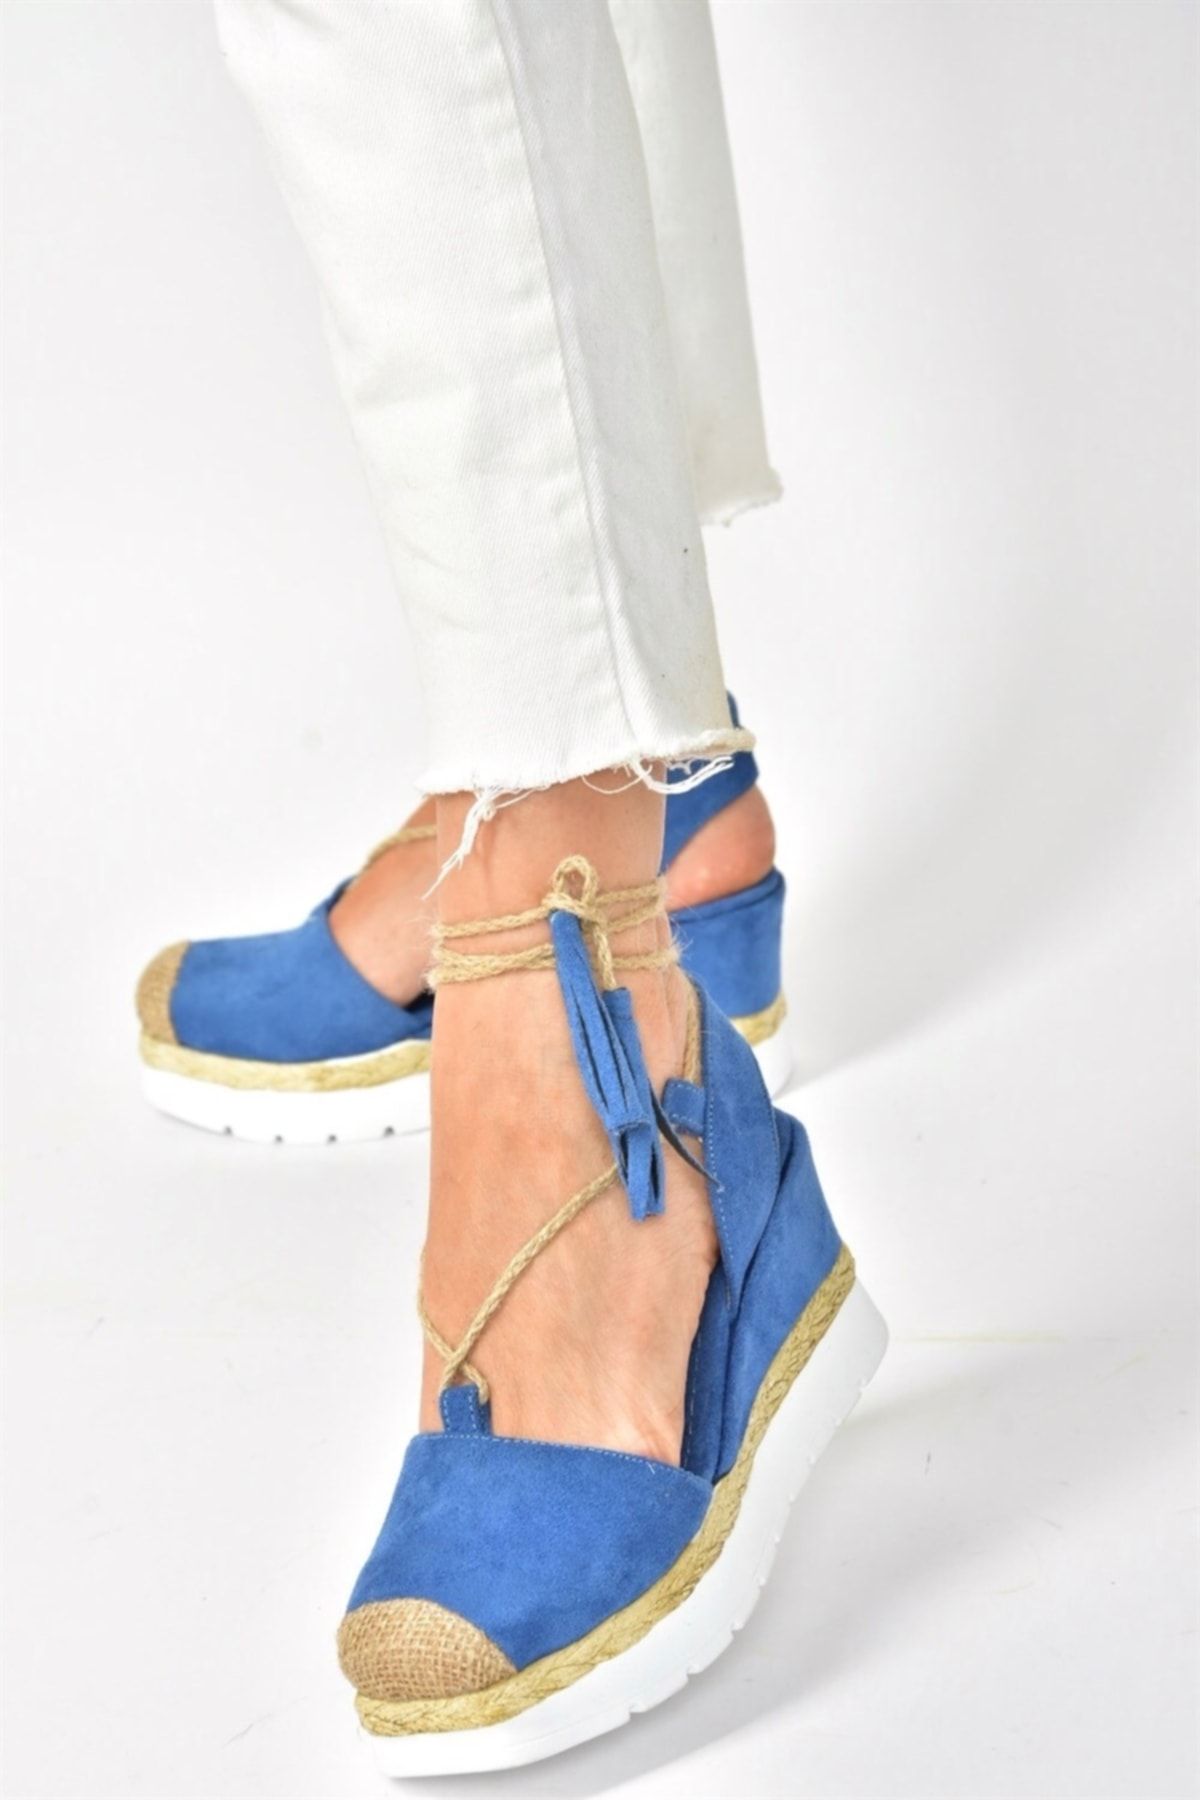 Fox Shoes Kot Mavi Süet Dolgu Topuklu Kadın Ayakkabı M996138502